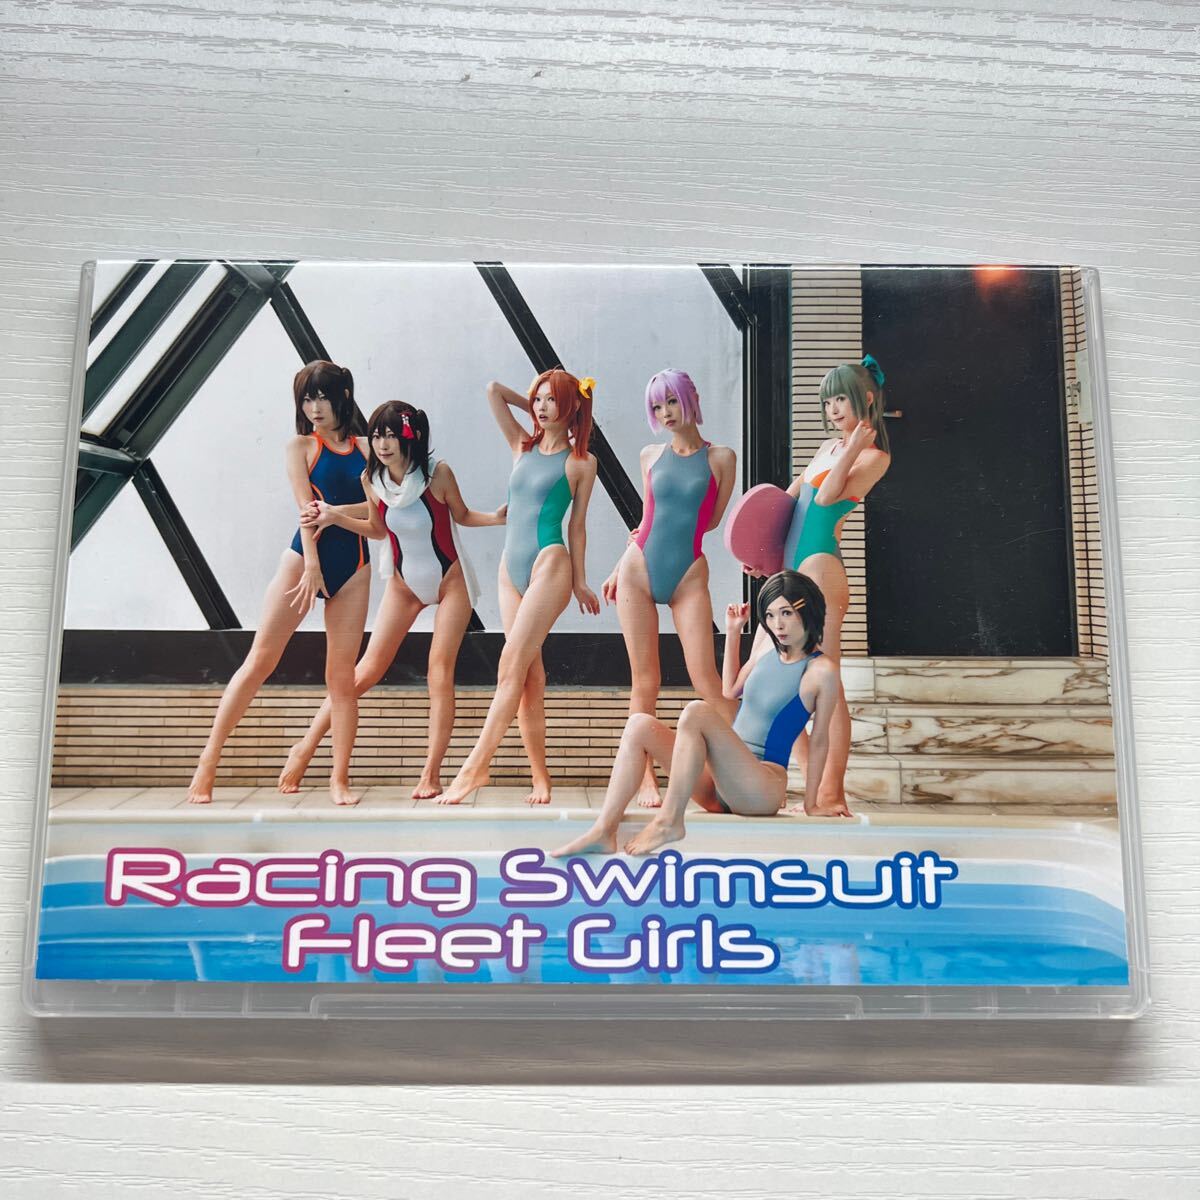 Racing Swimsuit Fleet Girls ULYSSES костюмированная игра фотоальбом ROM такой же человек .. купальный костюм 